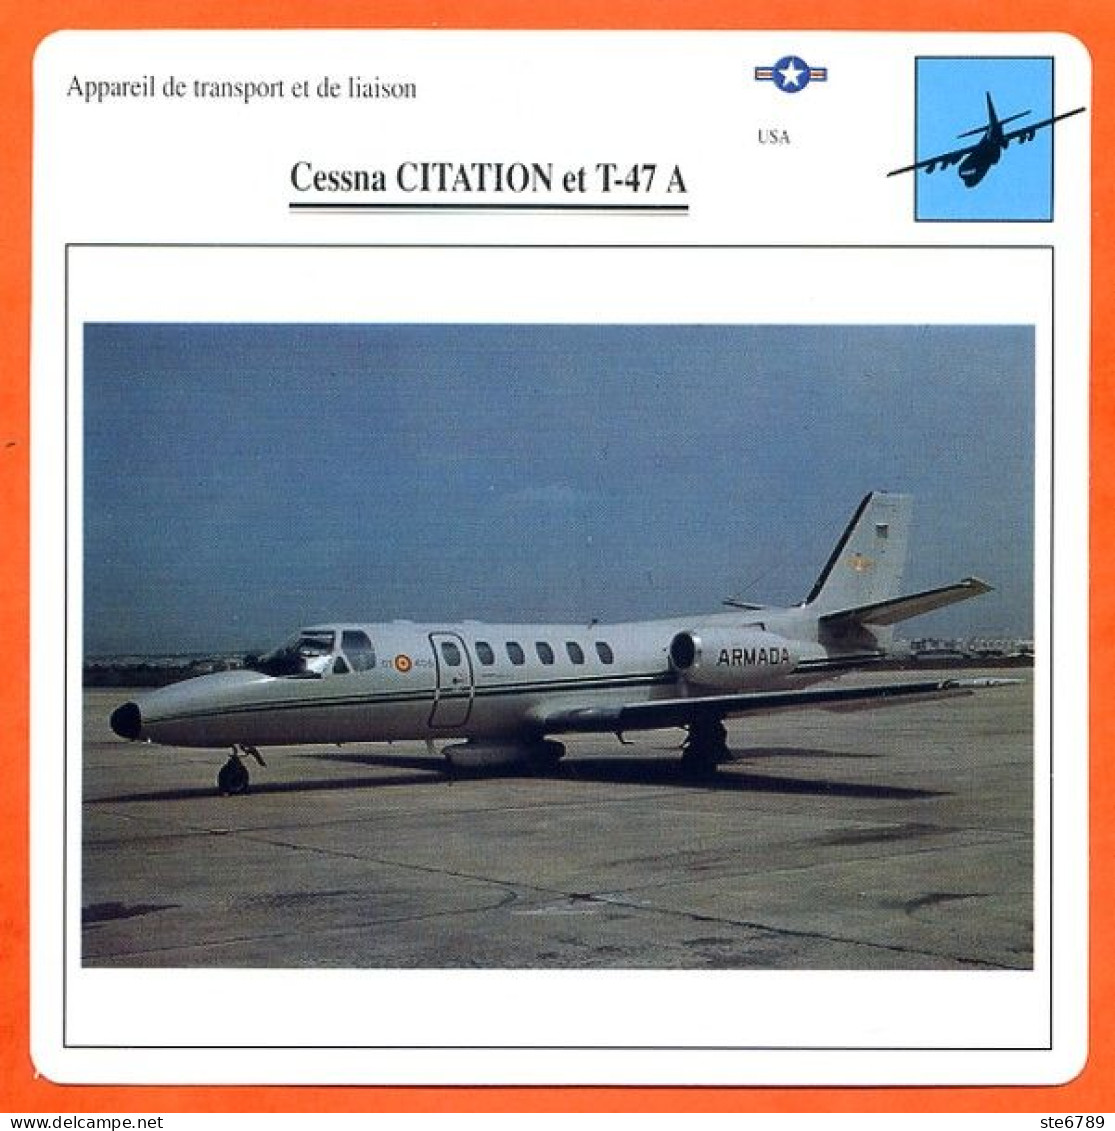 Fiche Aviation CESSNA CITATION Et T 47 A / Avion Transport Et Liaison USA Avions - Avions